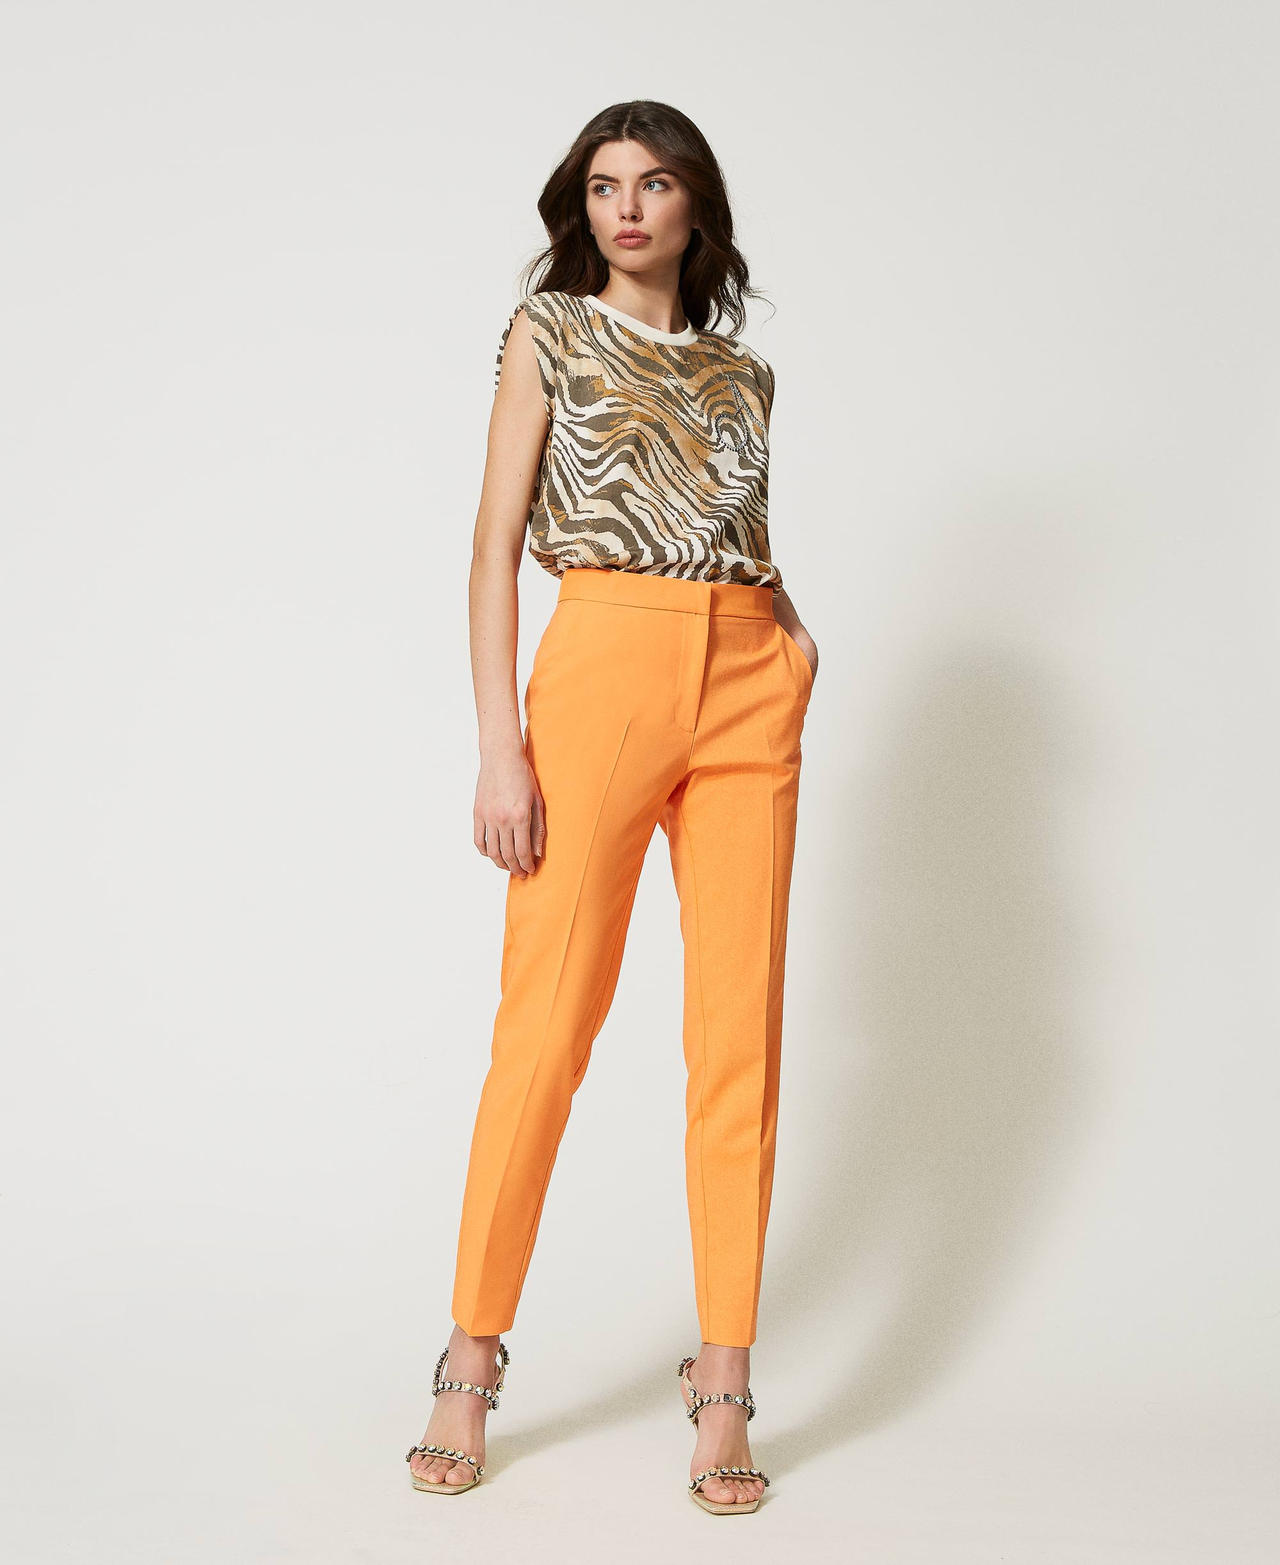 Pantaloni a sigaretta in tessuto tecnico Arancio "Orange Tiger" Donna 231AP2166-02